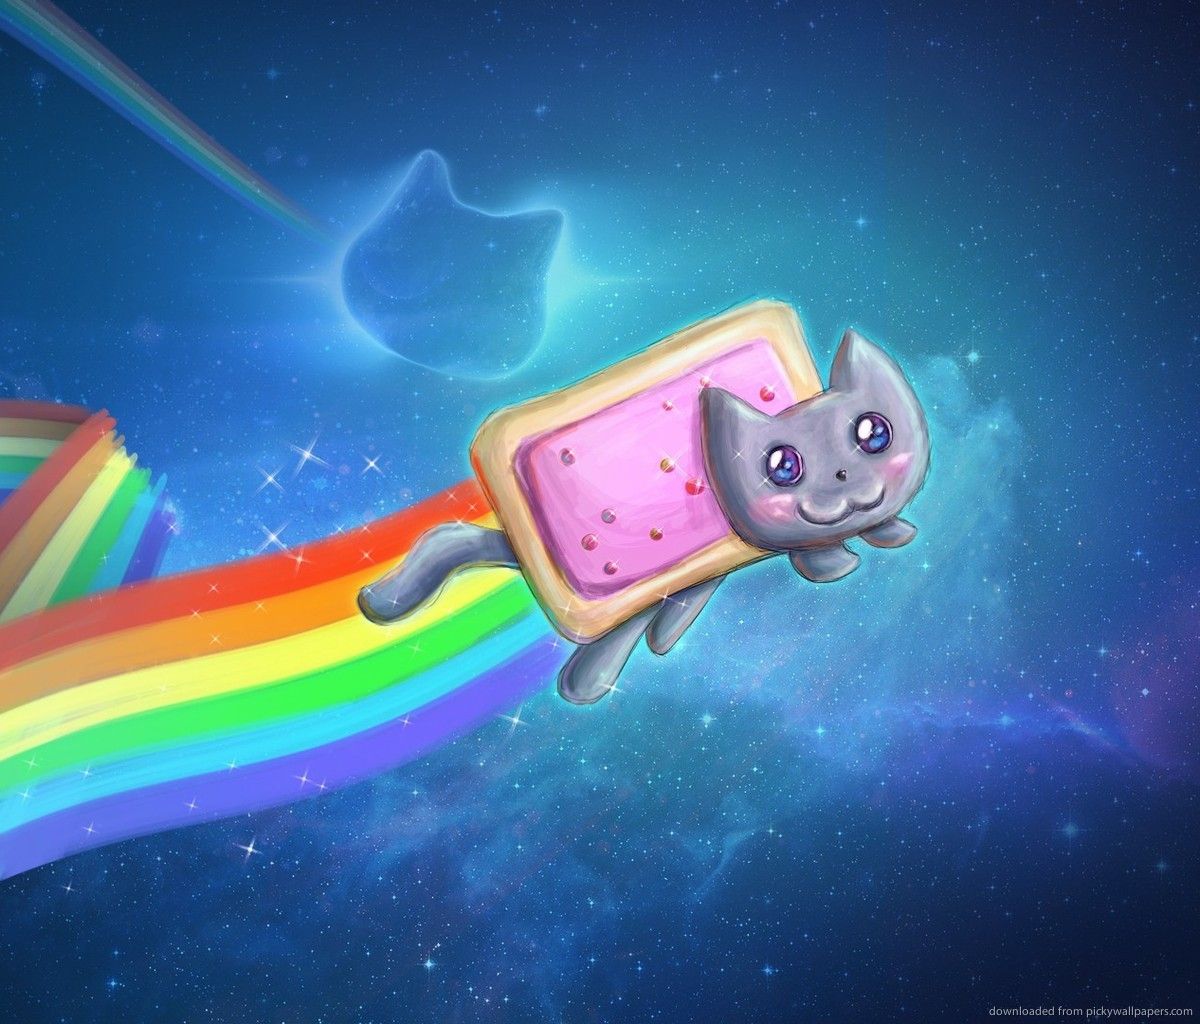 Nyan Cat cool art wallpaper. Nyan cat, Rainbow